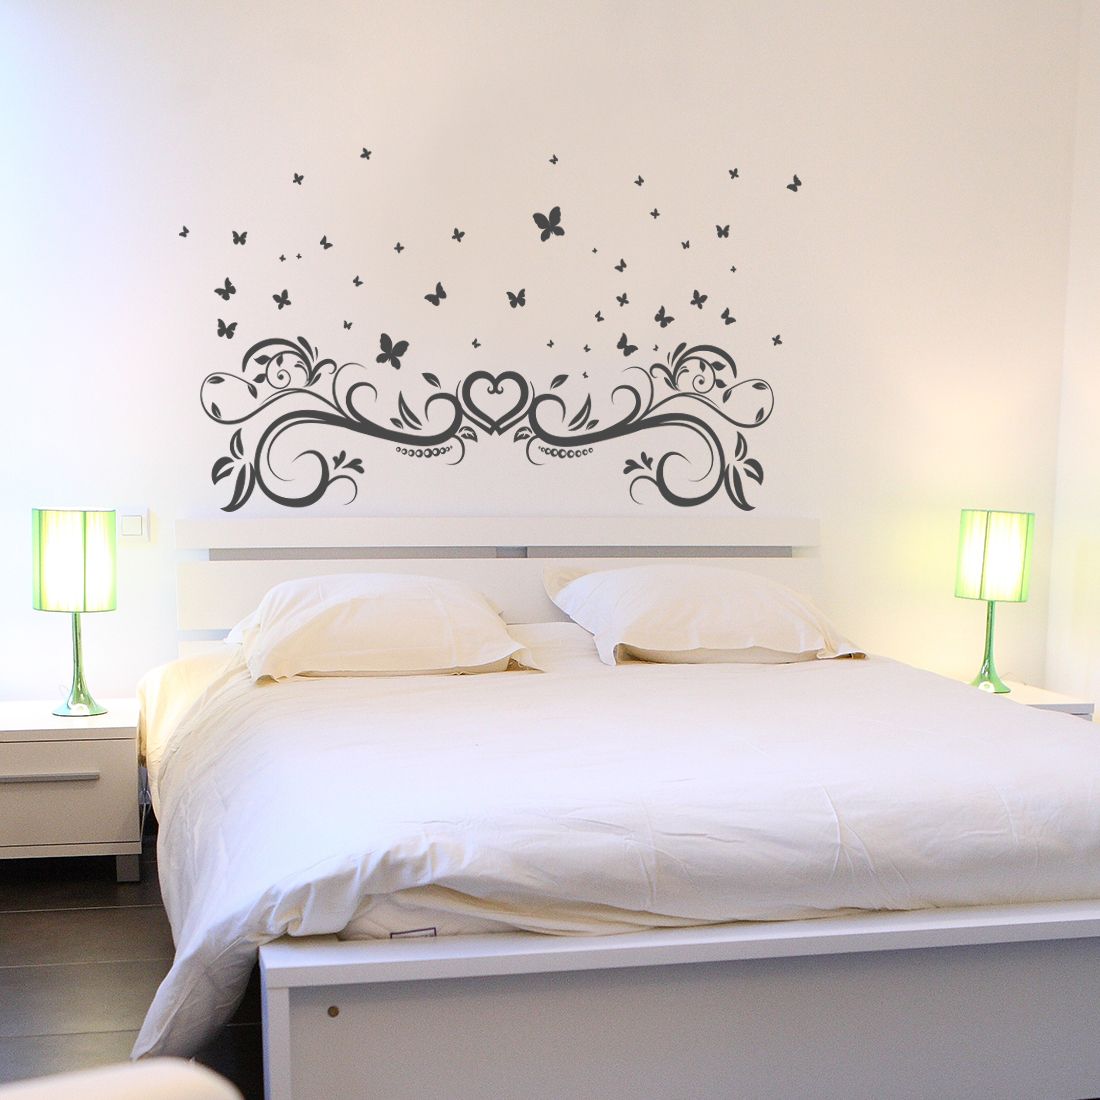 Stickers chambre à coucher : tête de lit, citation, motifs, couple